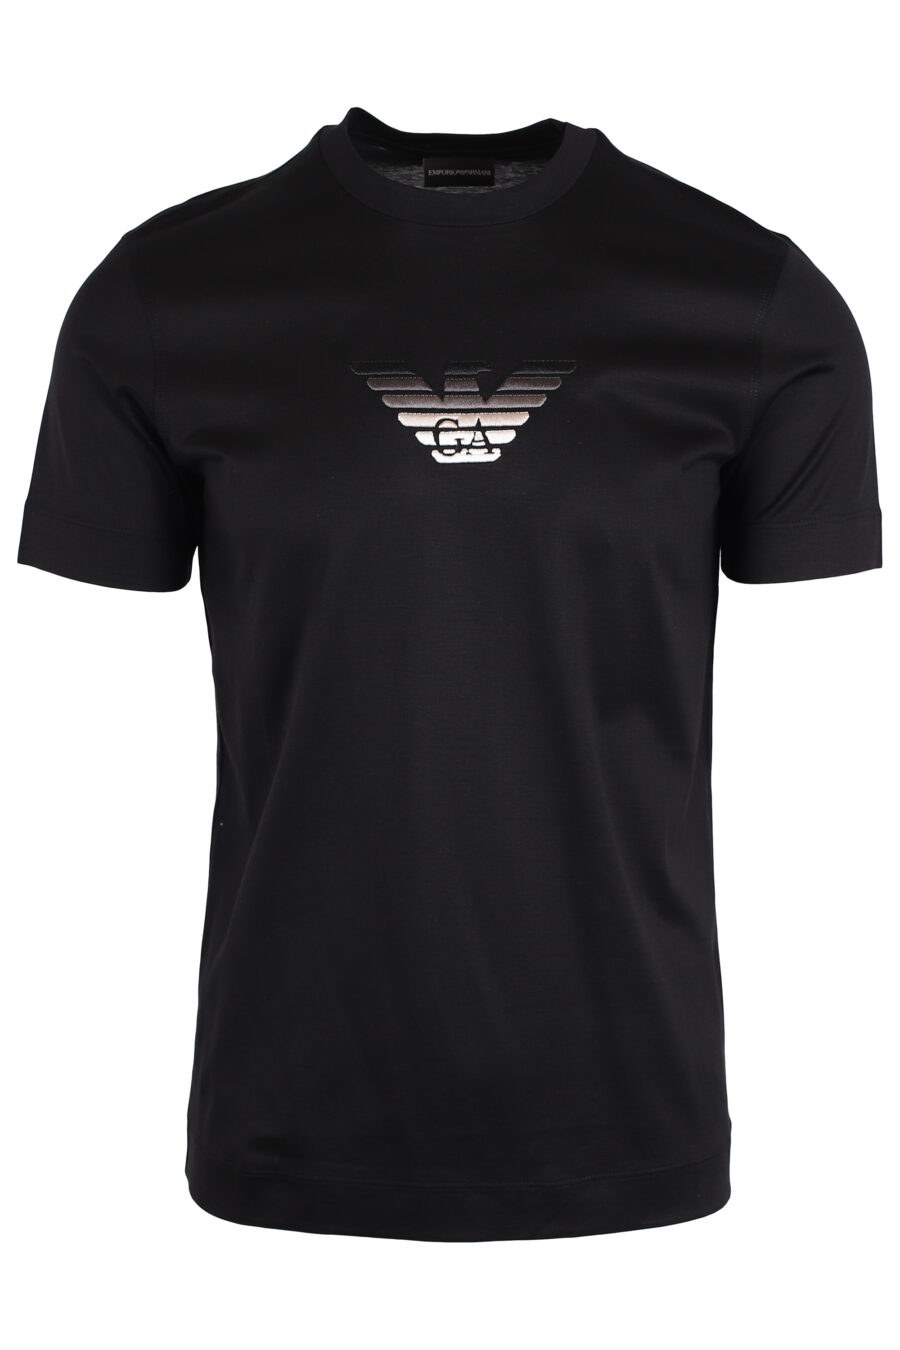 Camiseta negra con minilogo águila en degradé blanco - IMG 3981